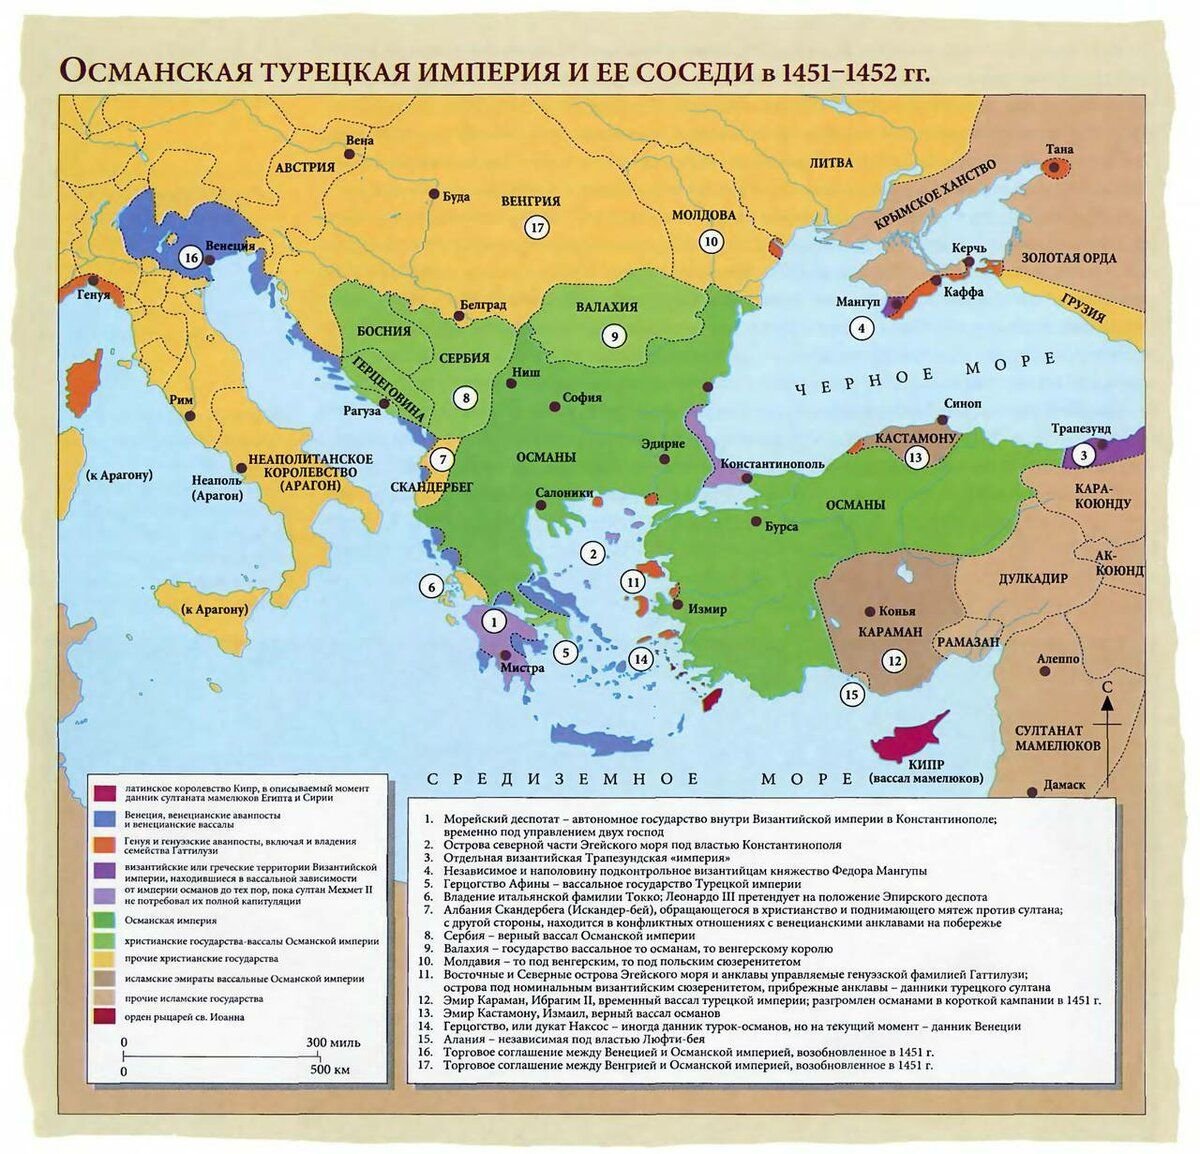 Византийская империя город константинополь на карте